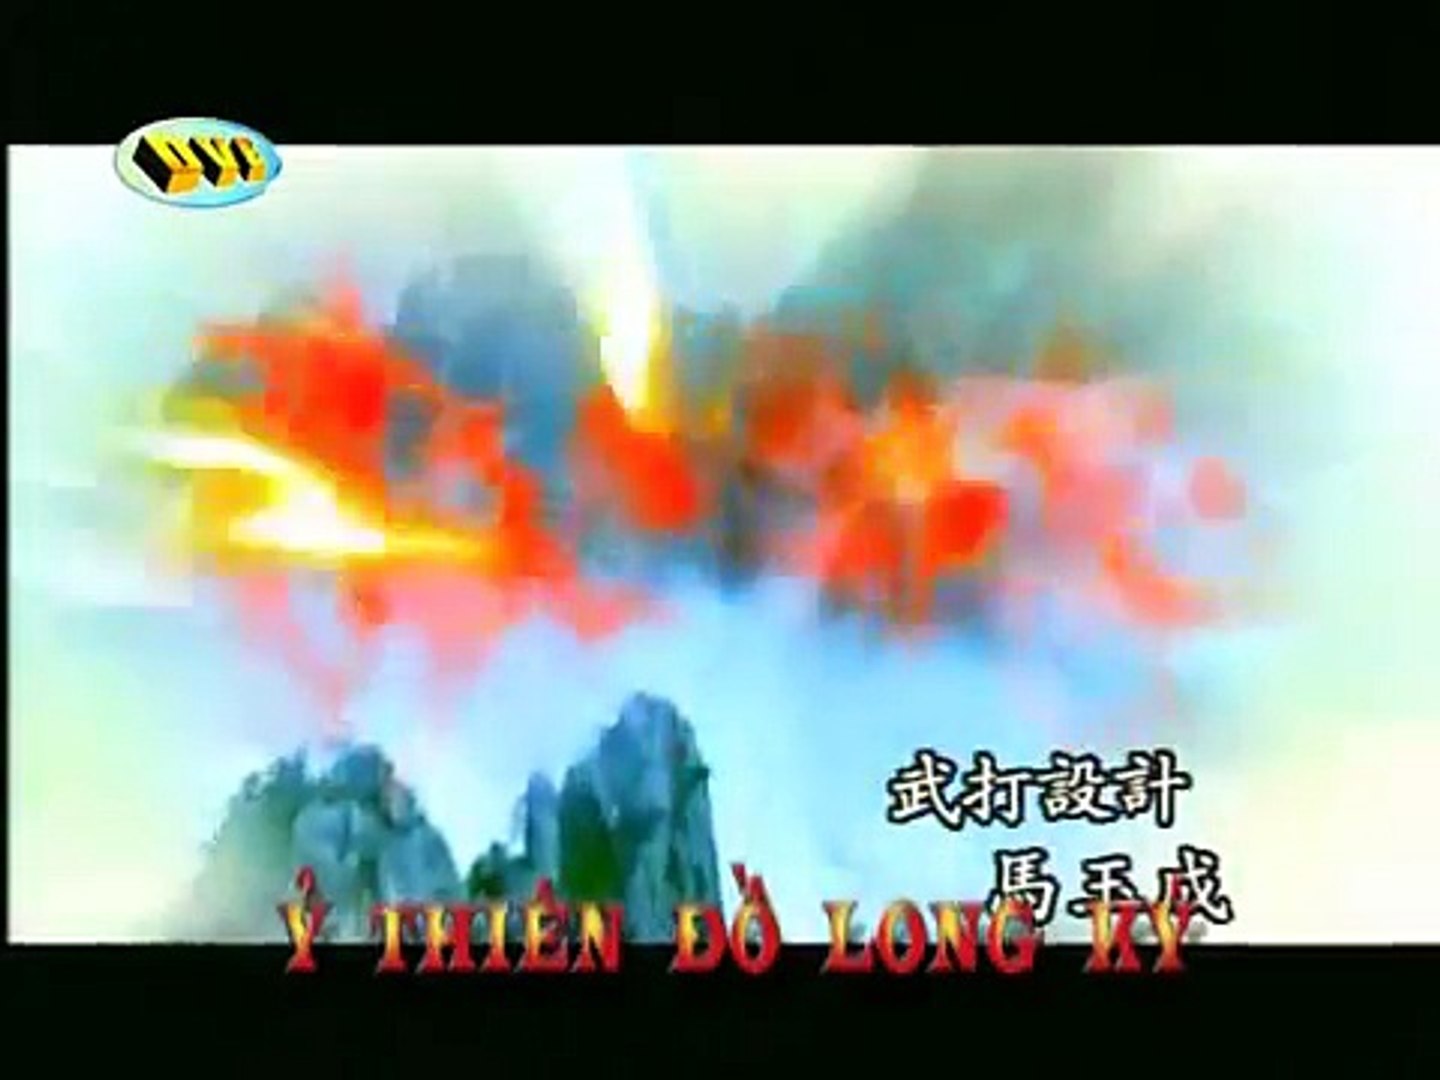 Ỷ Thiên Đồ Long Ký (2003) - Thuyết Minh - Tập 02